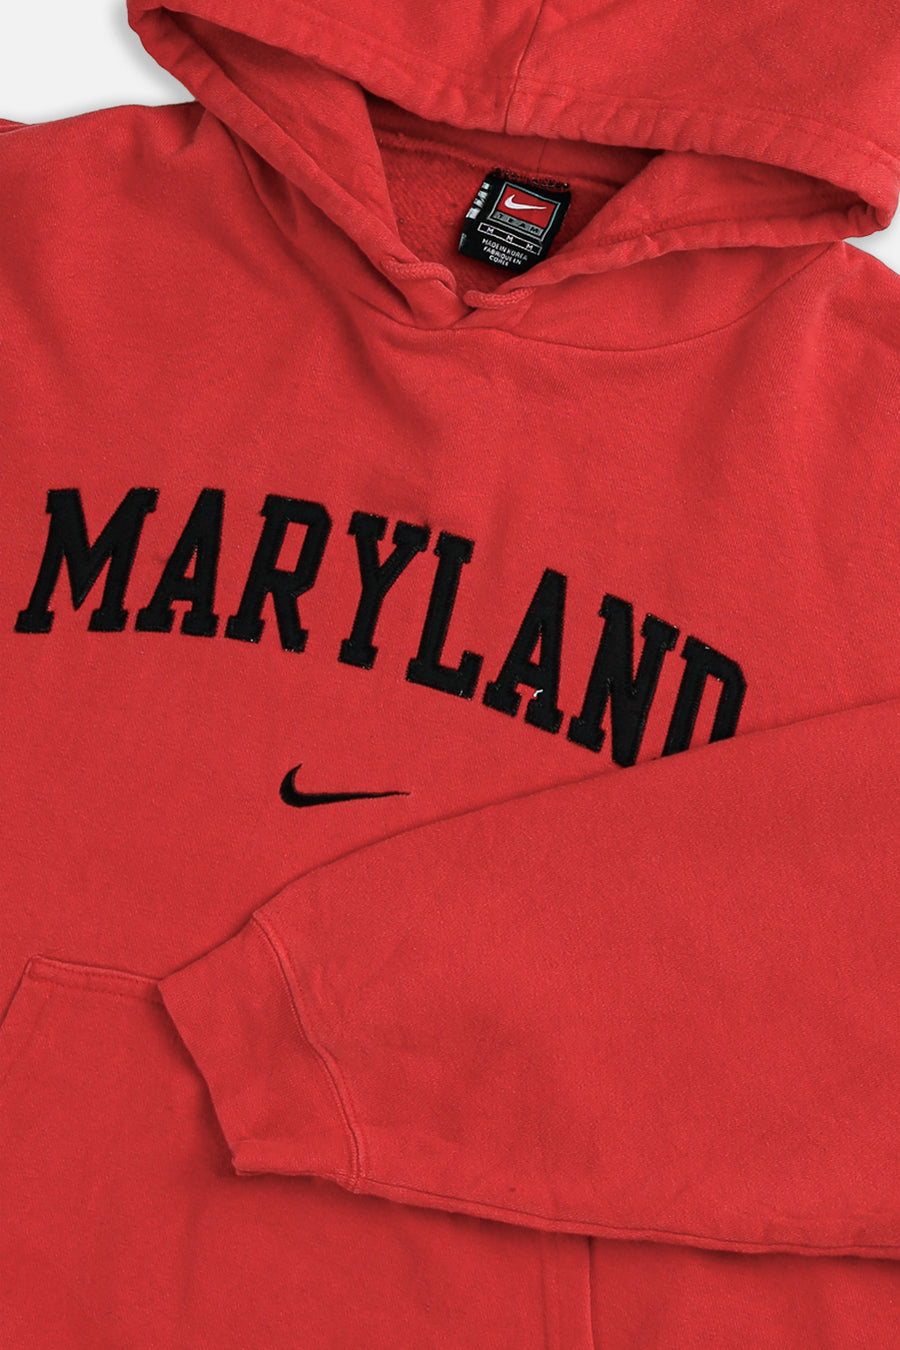 Vintage Maryland Nike Team Sweatshirt - M